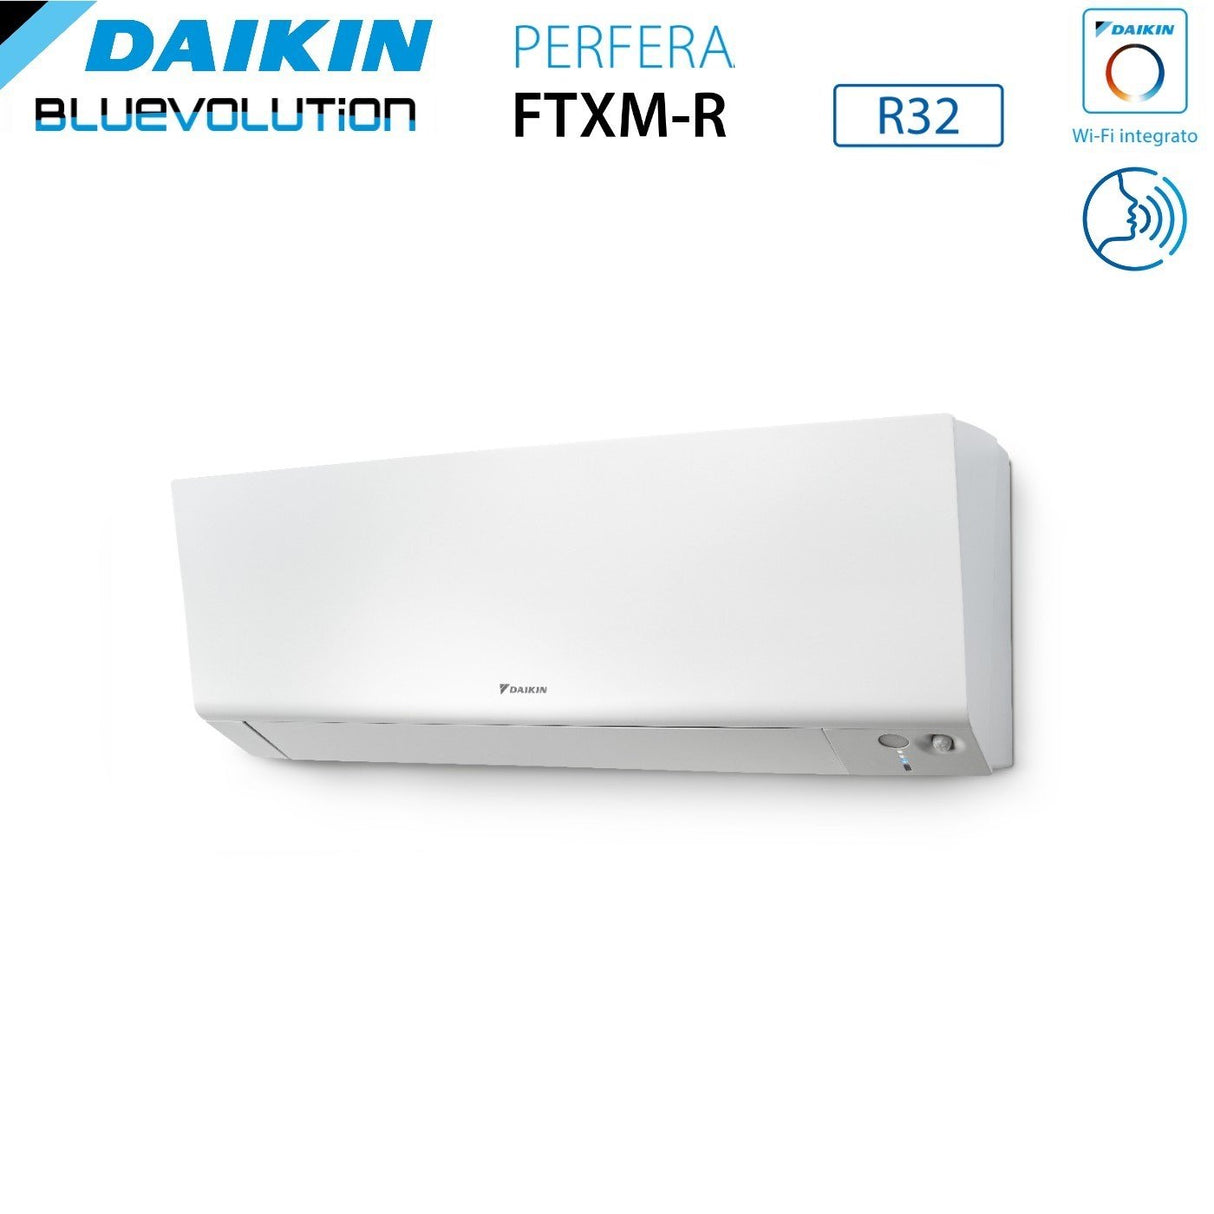 immagine-5-daikin-climatizzatore-condizionatore-daikin-bluevolution-quadri-split-inverter-serie-ftxmr-perfera-wall-9121212-con-4mxm80a-r-32-wi-fi-integrato-9000120001200012000-garanzia-italiana